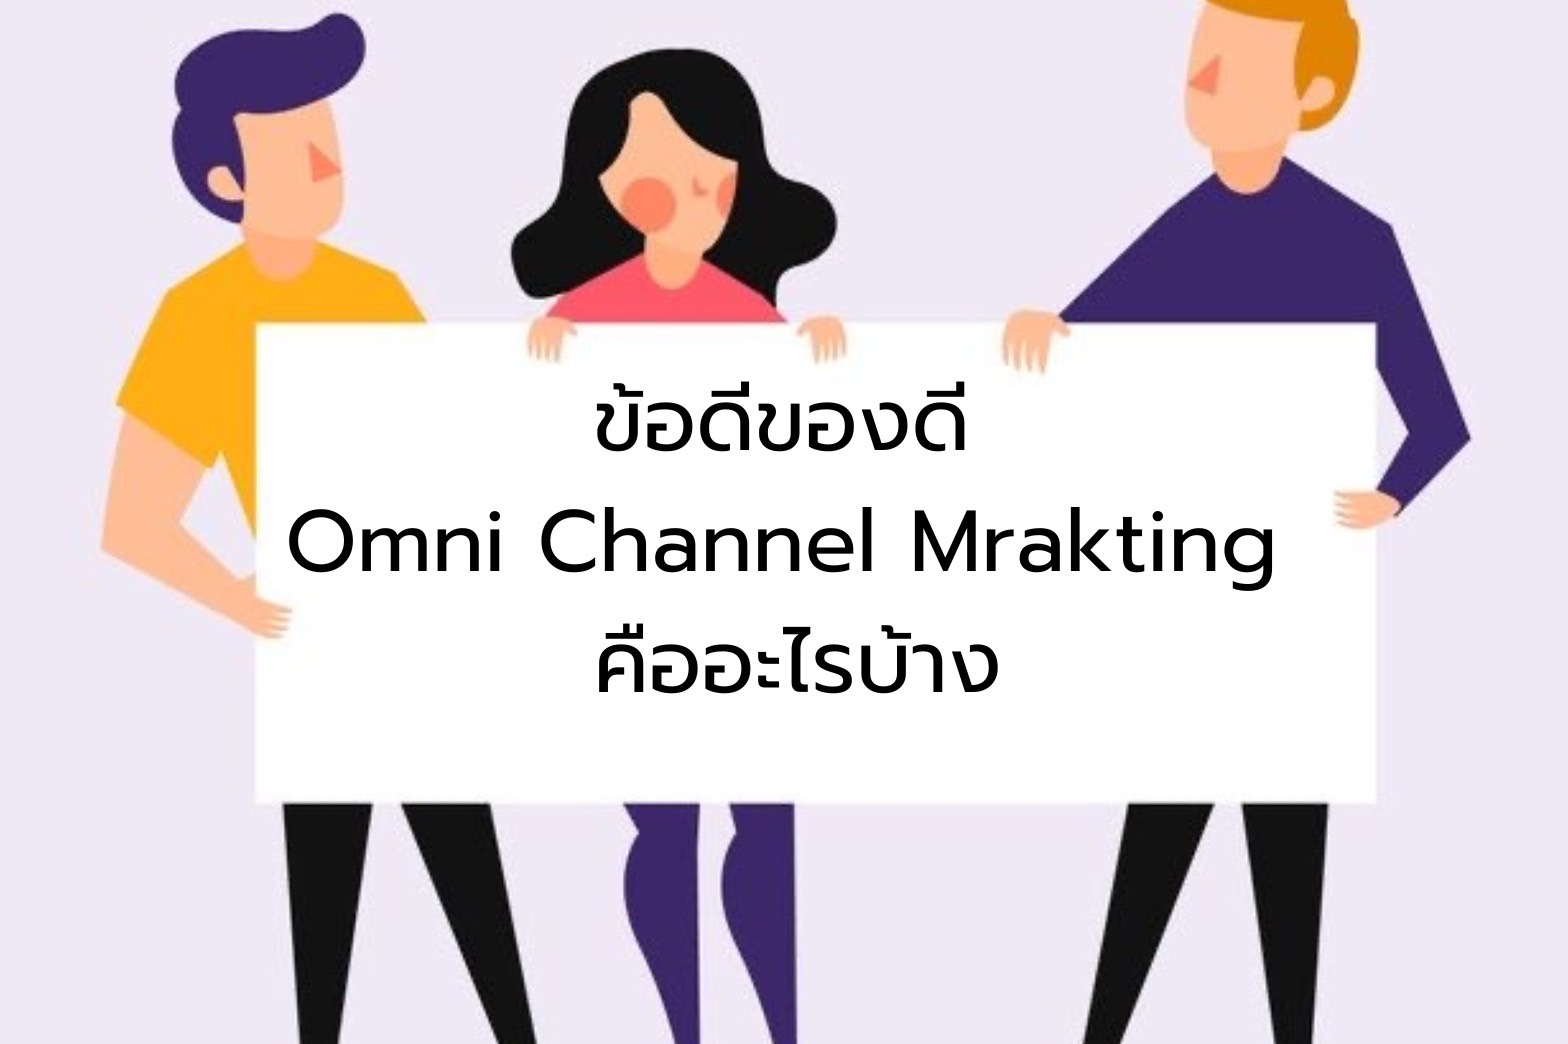 ข้อดีของ Omni Channel Marketing คืออะไรบ้าง